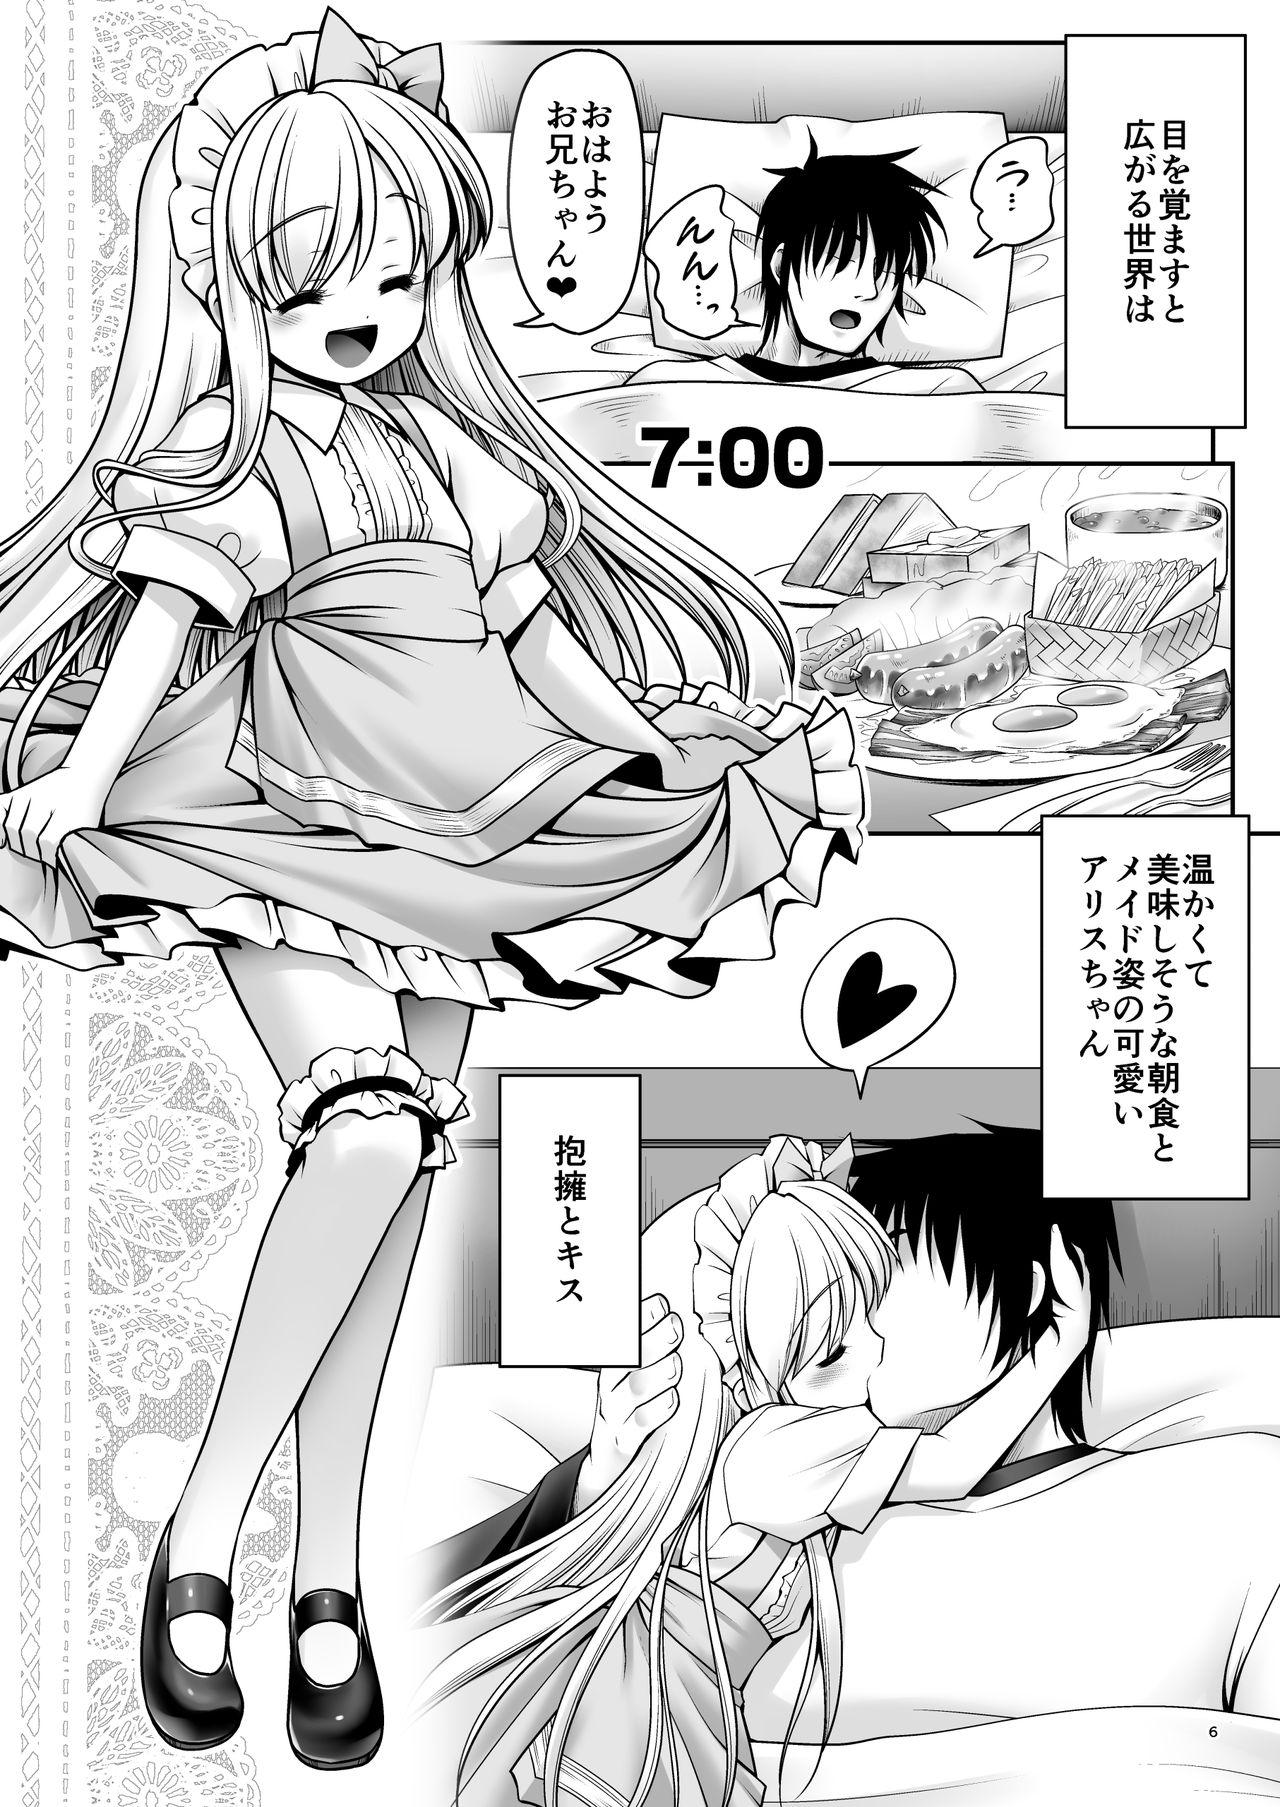 Collar Fushigi no Kuni wa Tanetsuke Biyori - Alice in wonderland Sex - Page 5